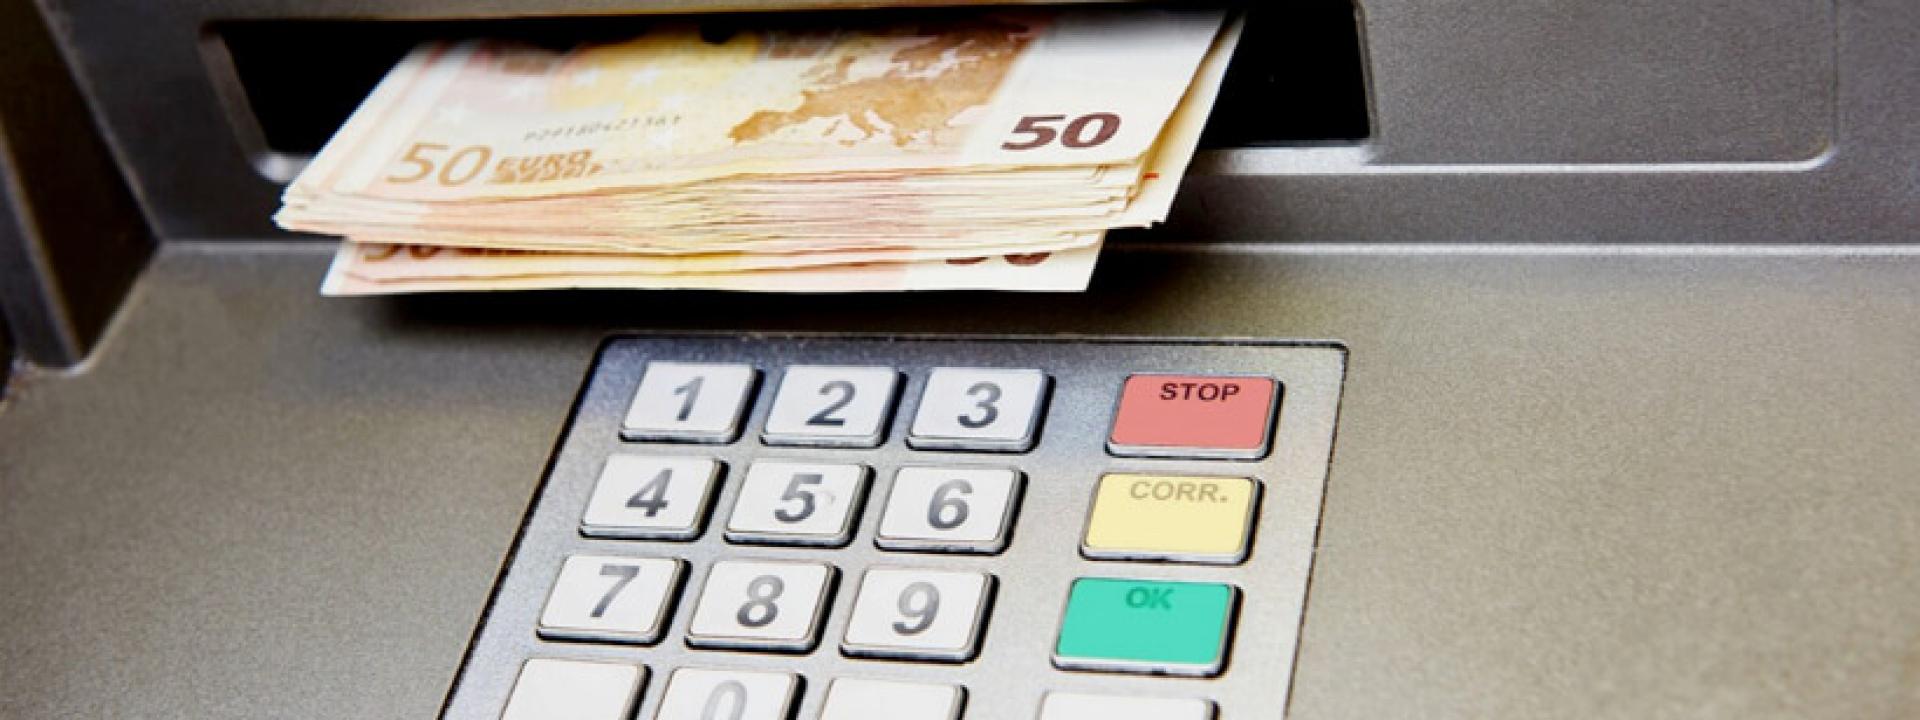 Il bancomat eroga banconote da 50 euro invece di quelle da 20, ma ora la banca rivuole indietro i soldi